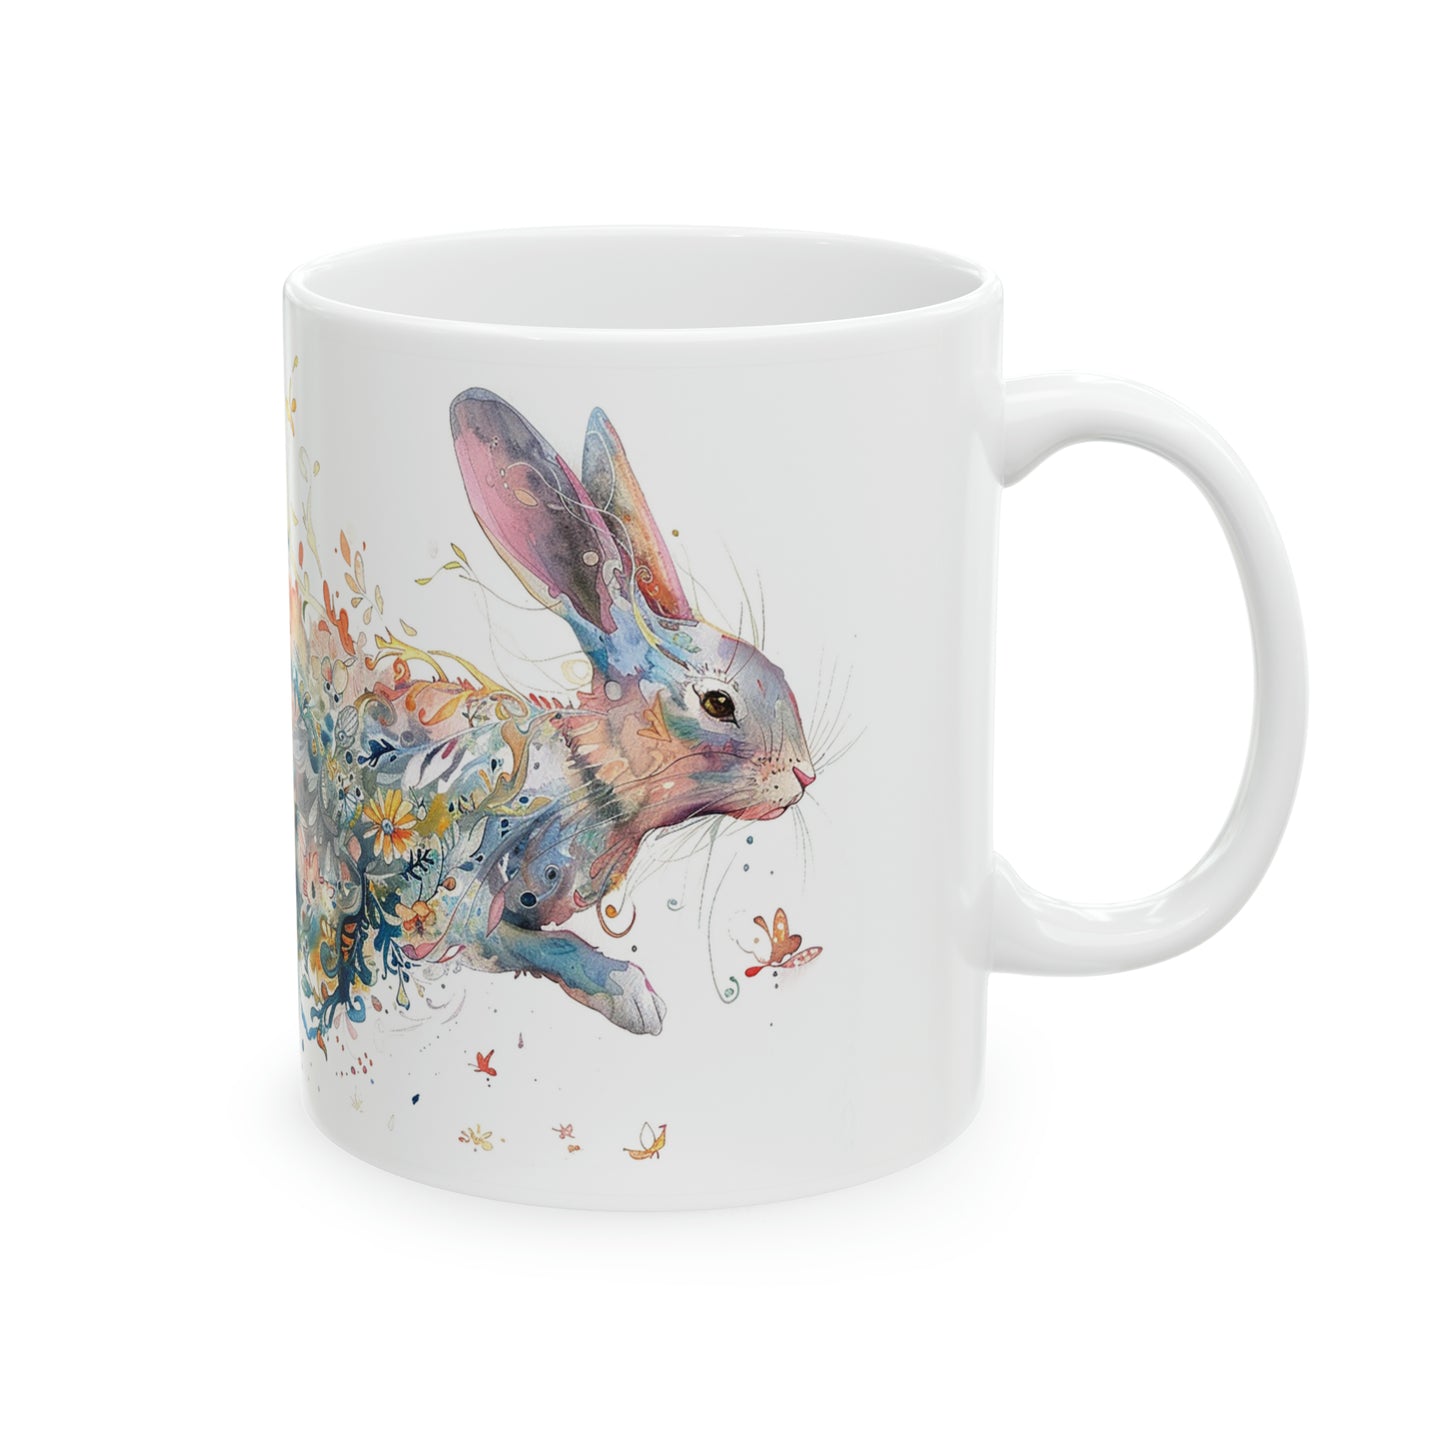 Bunny Mug, Rabbit Mug, Easter Mug, Rabbit Painting Coffee Mug, Bunny Tea Cup, Easter Bunny Mug, Beautiful Bunny Mug, Gift For Her